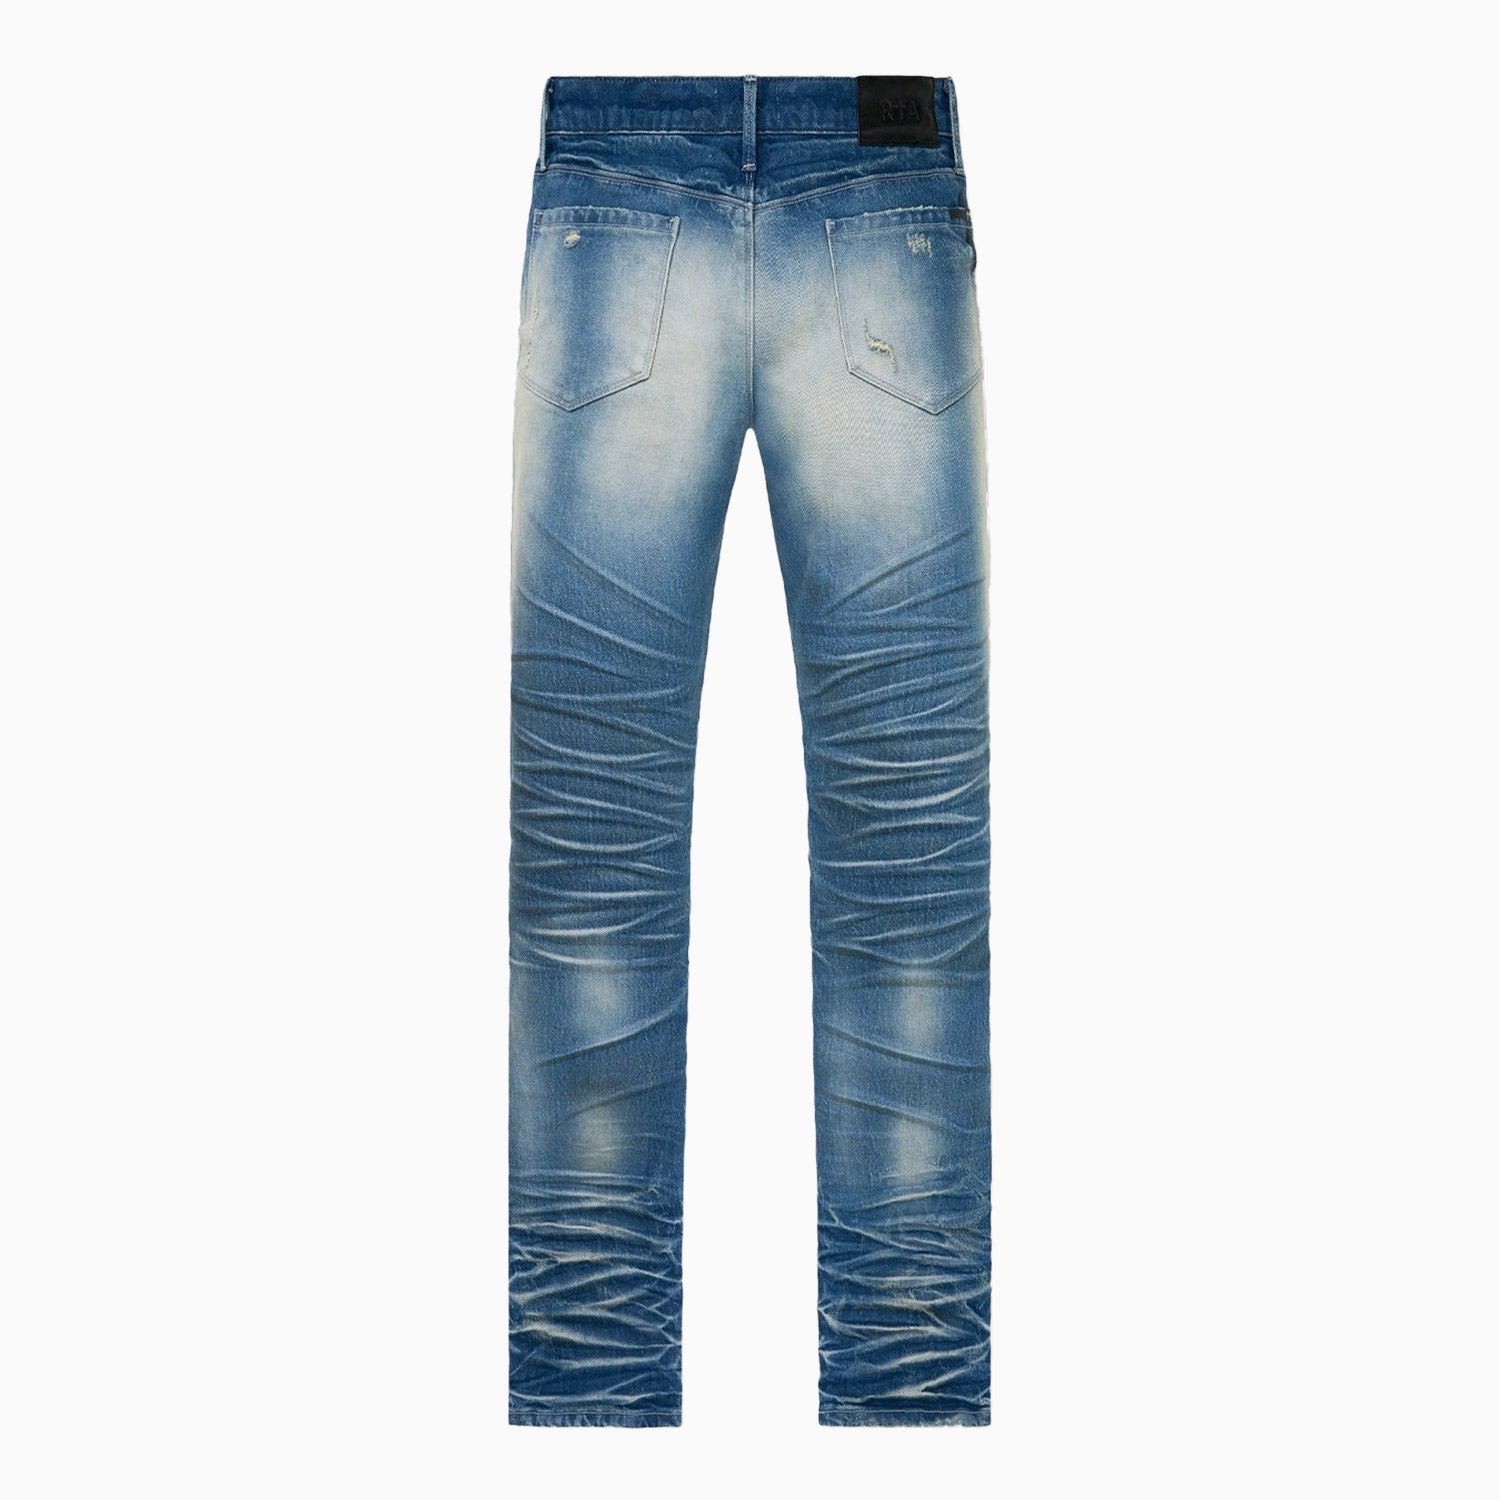 rta-mens-olivier-skinny-denim-jeans-pant-mf23d677-b1838stmdb